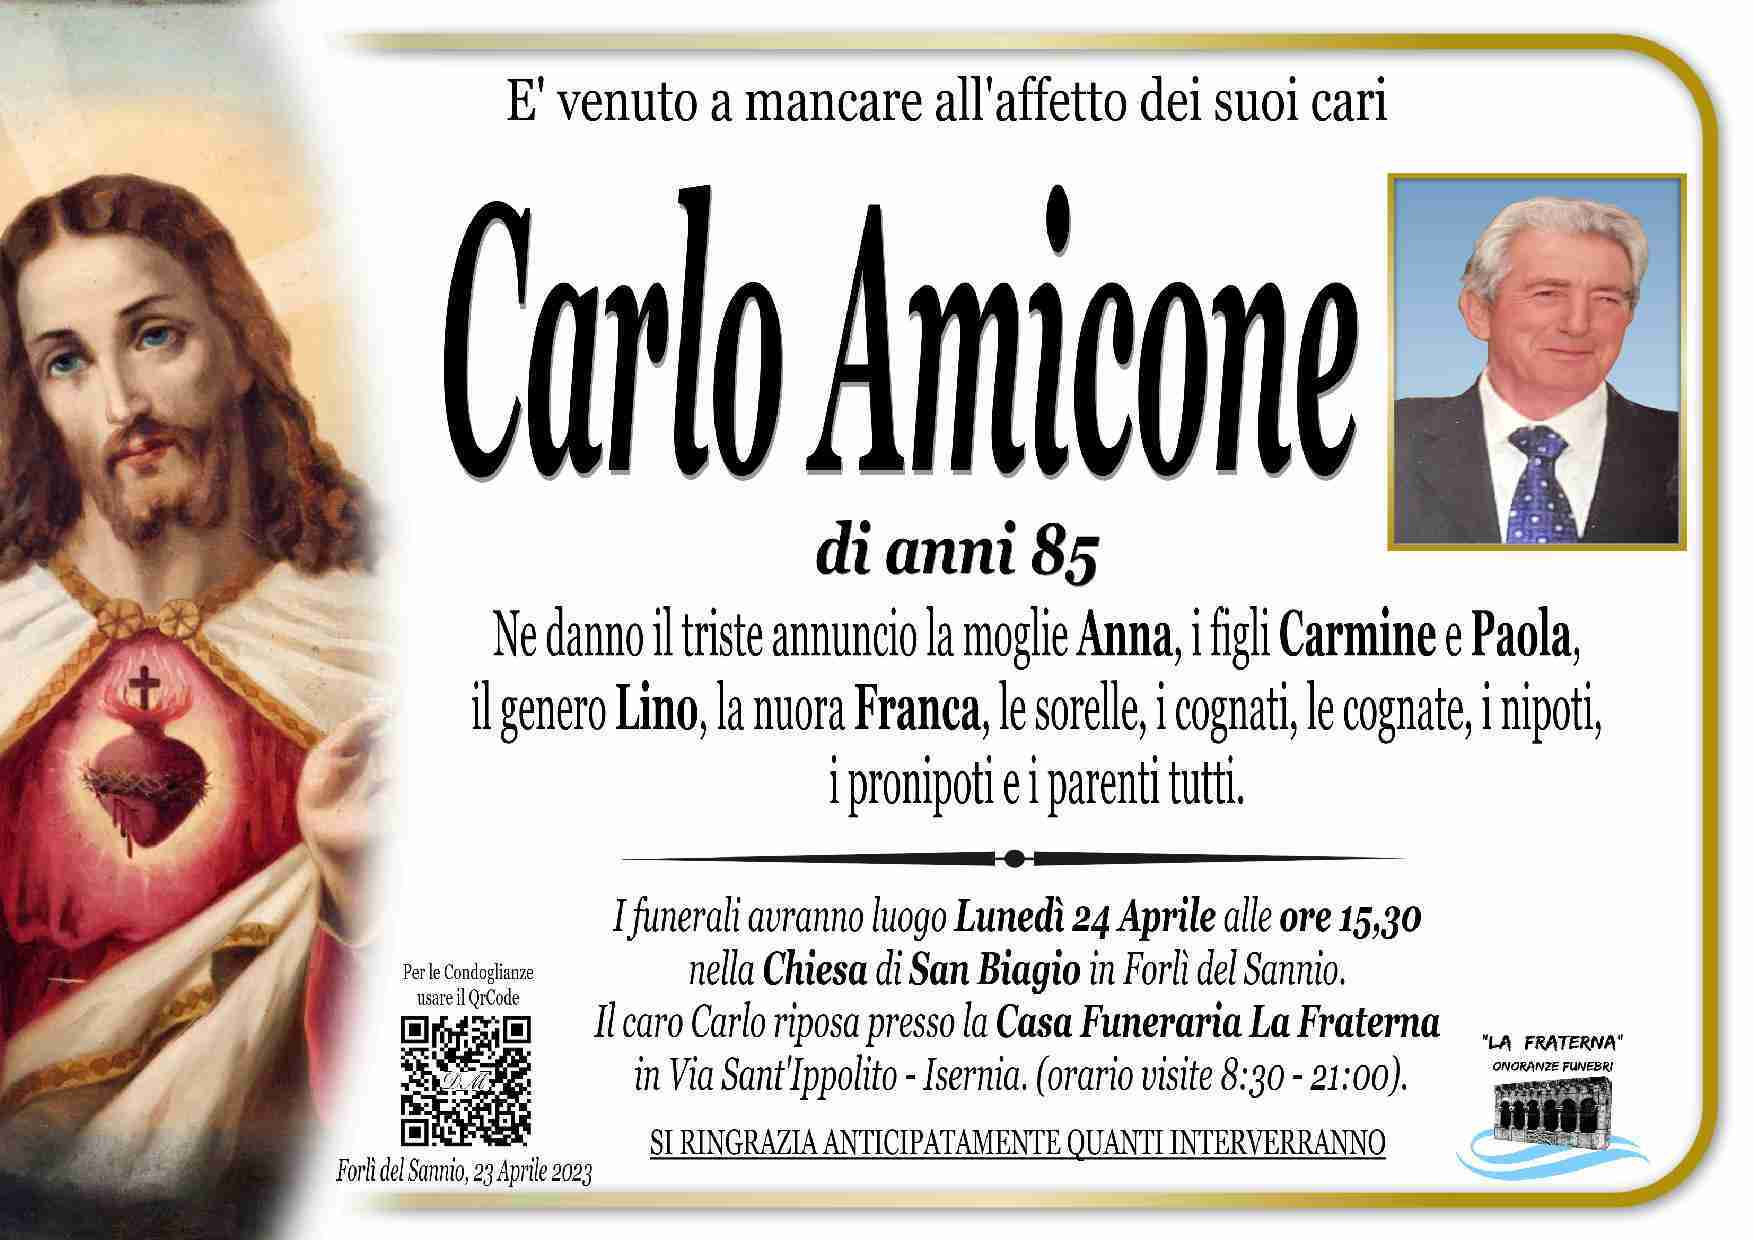 Carlo Amicone